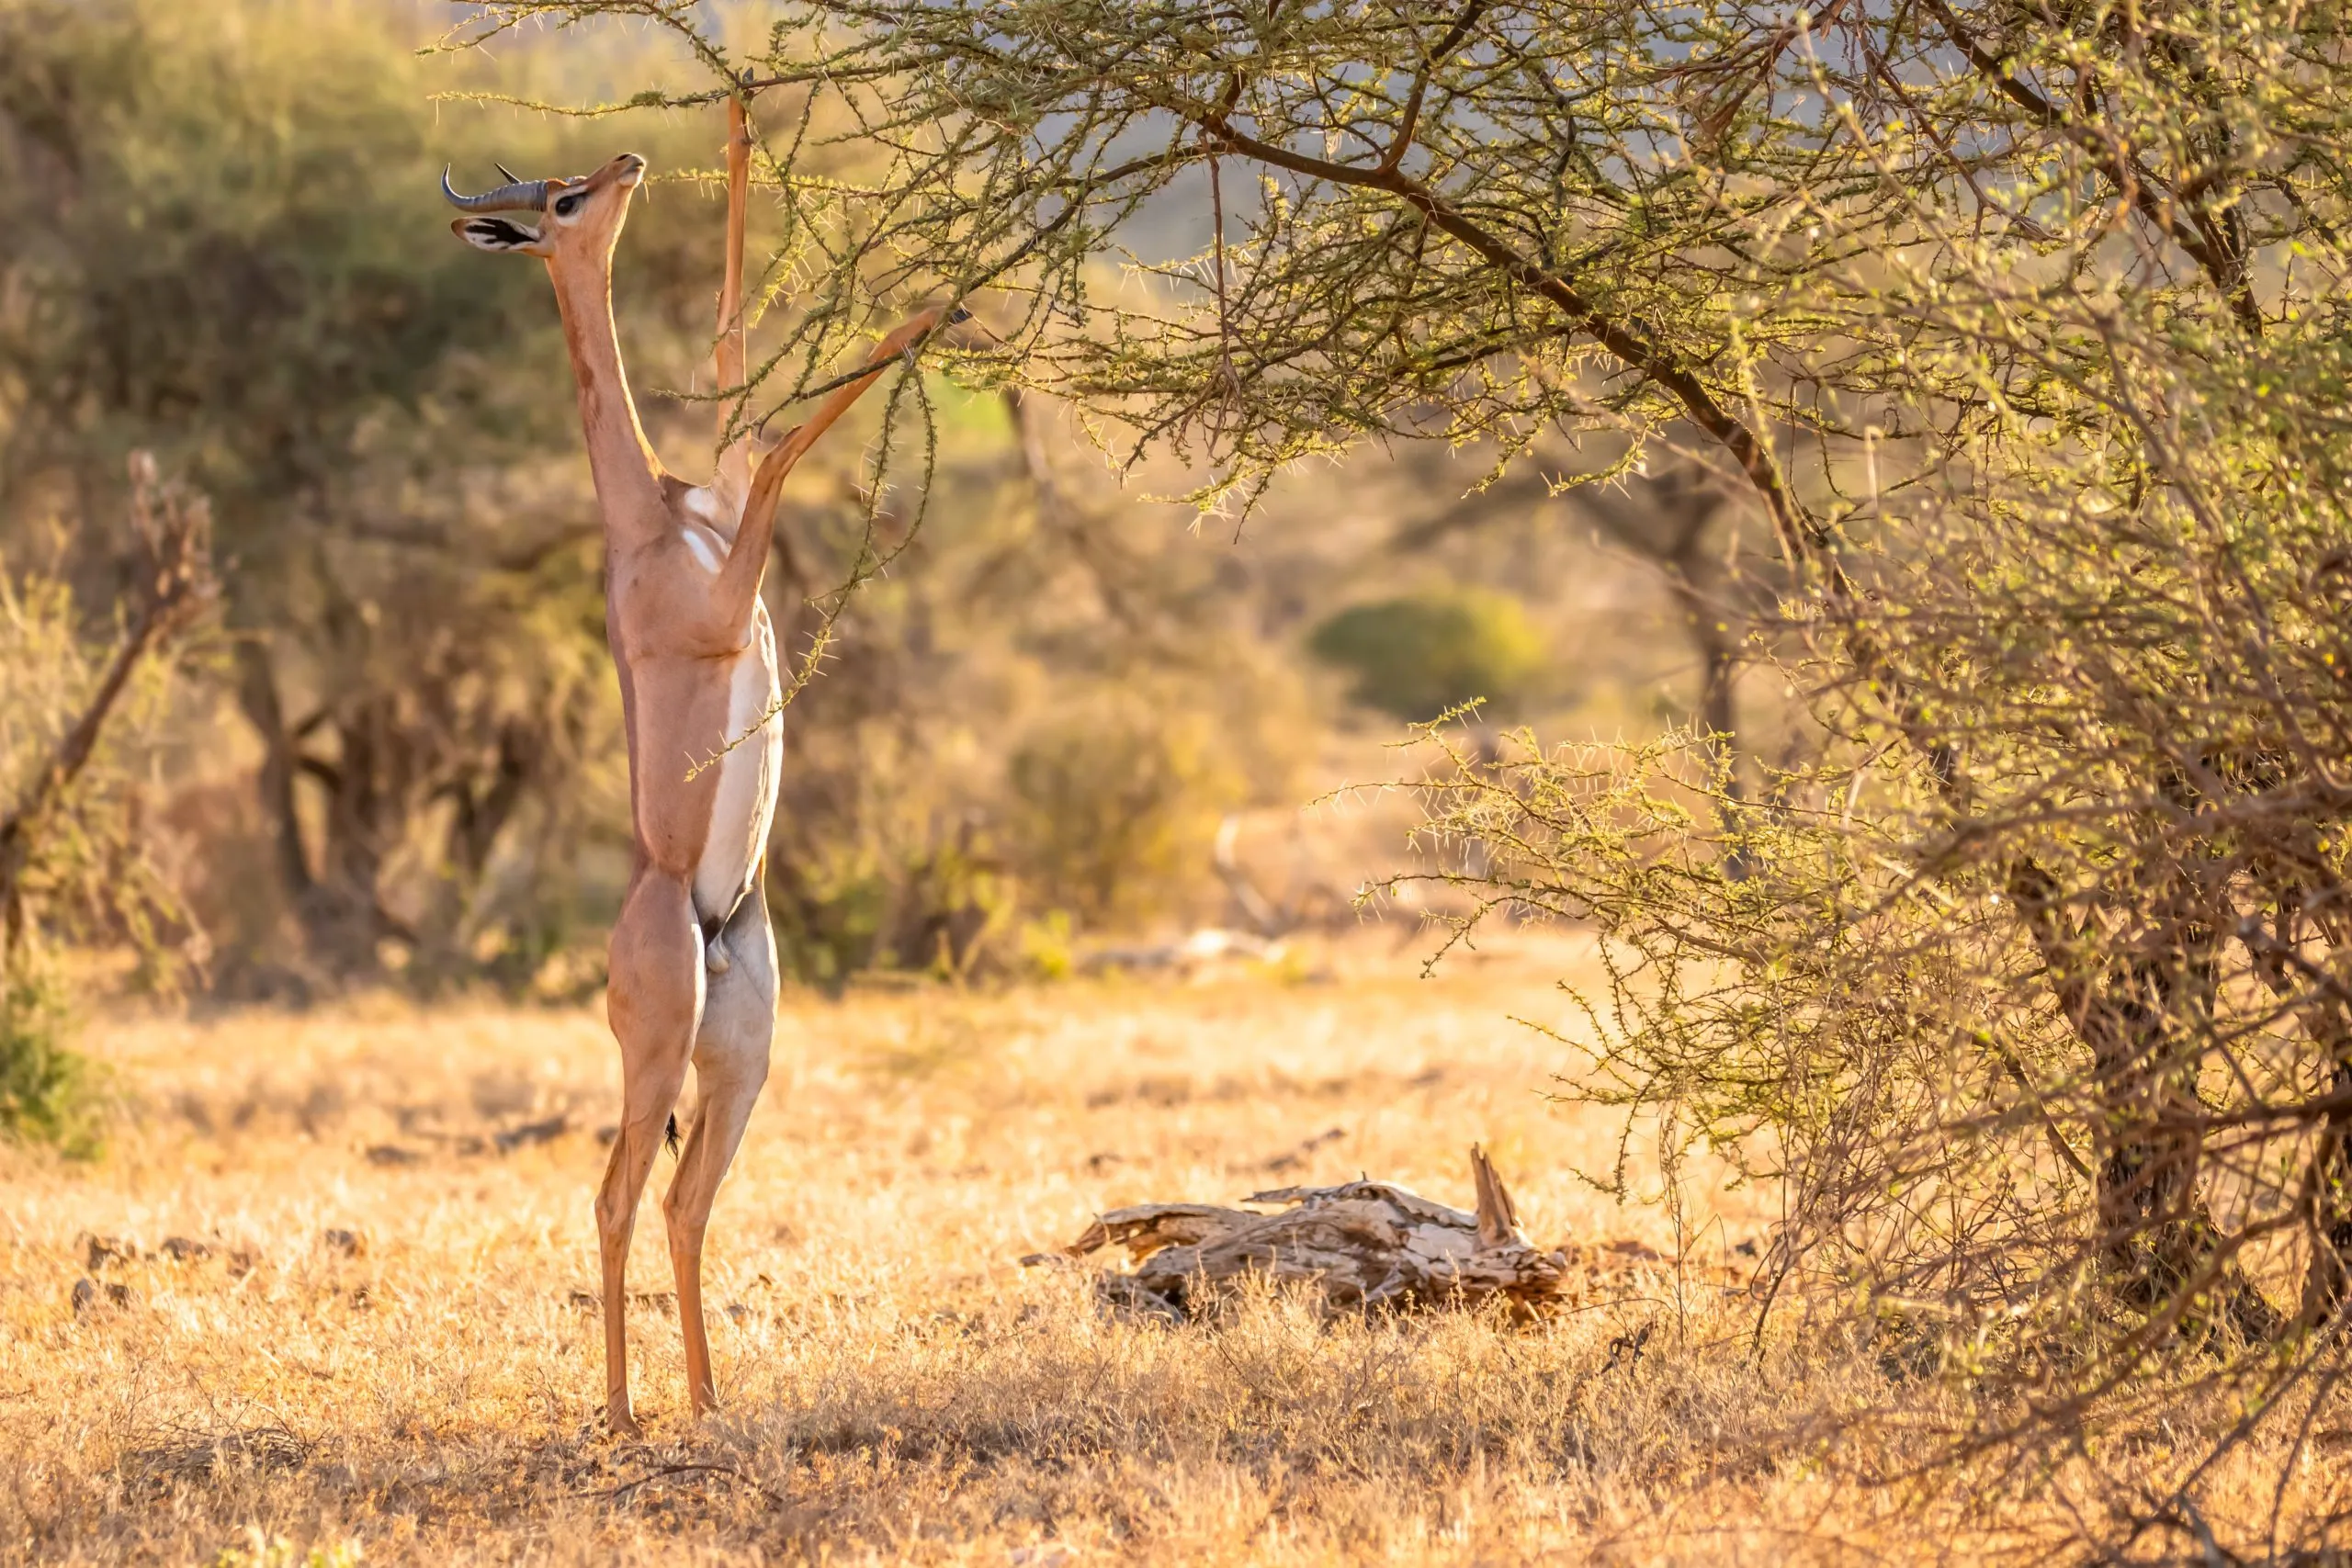 Gerenuk, Litocranius walleri även giraffgasell,långhalsad antilop, lång smal hals och lemmar,står på bakbenen vid bladmatning. Afrikanska färger på kvällen. Samburu nationalreservat, Kenya